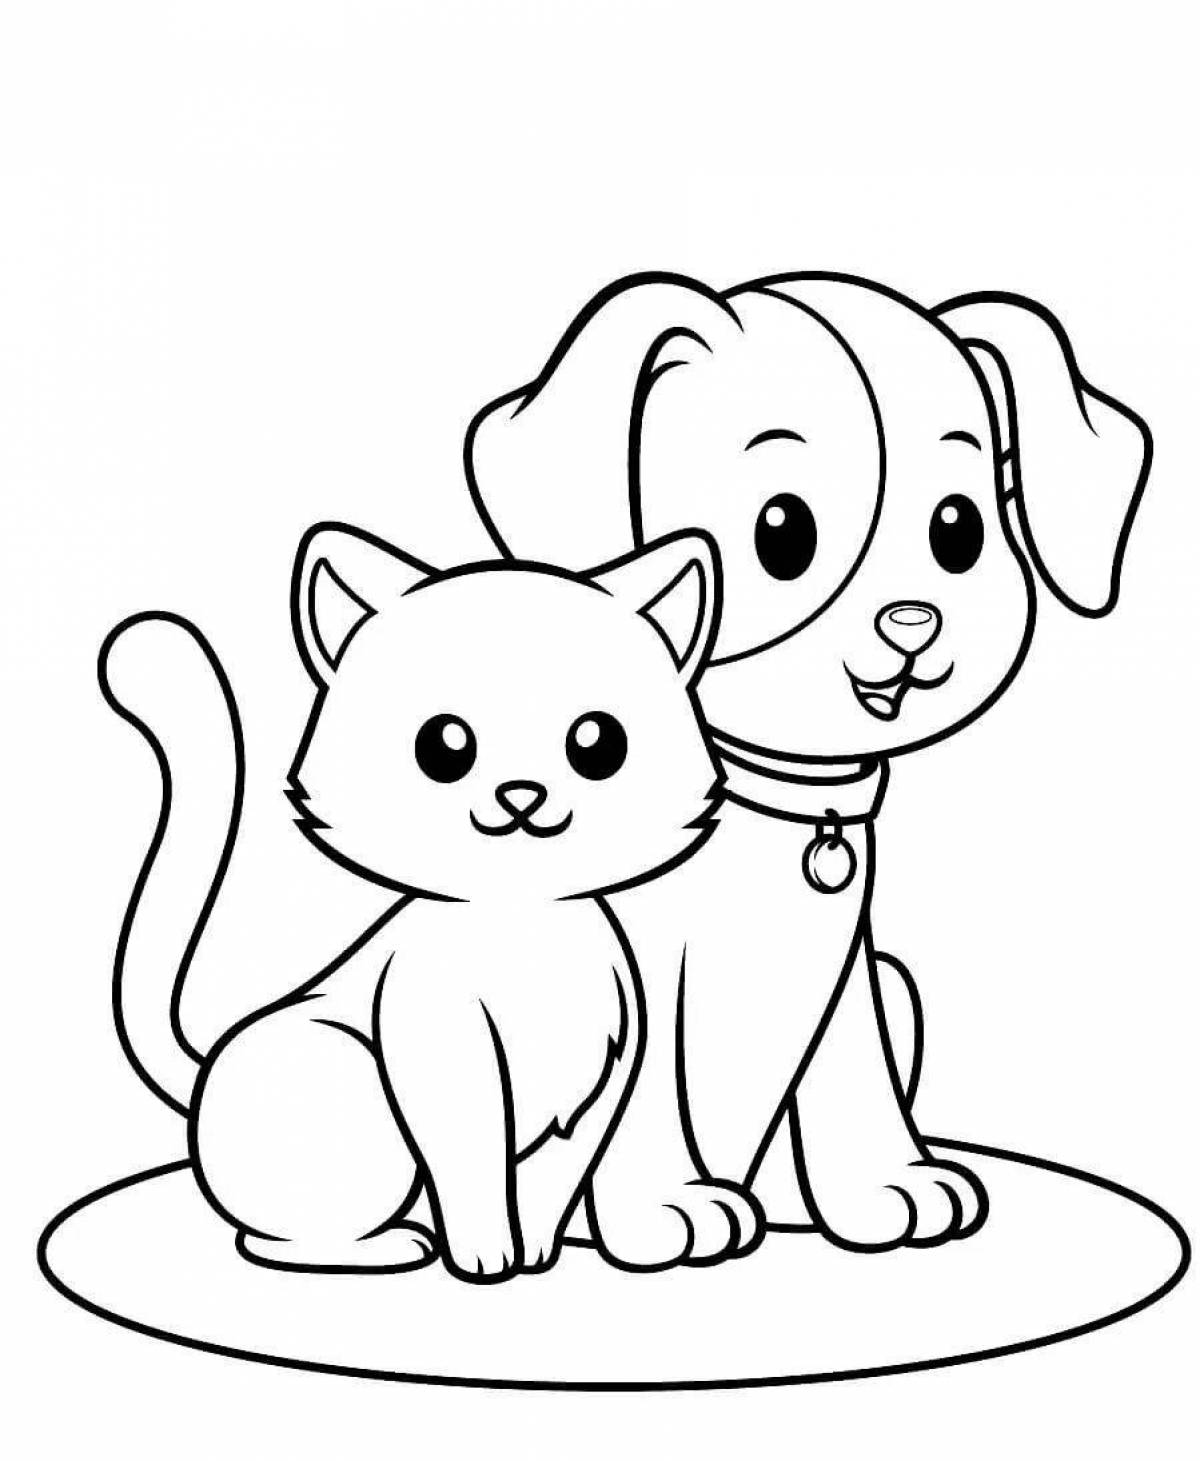 Раскраска любящая кошка и собака вместе